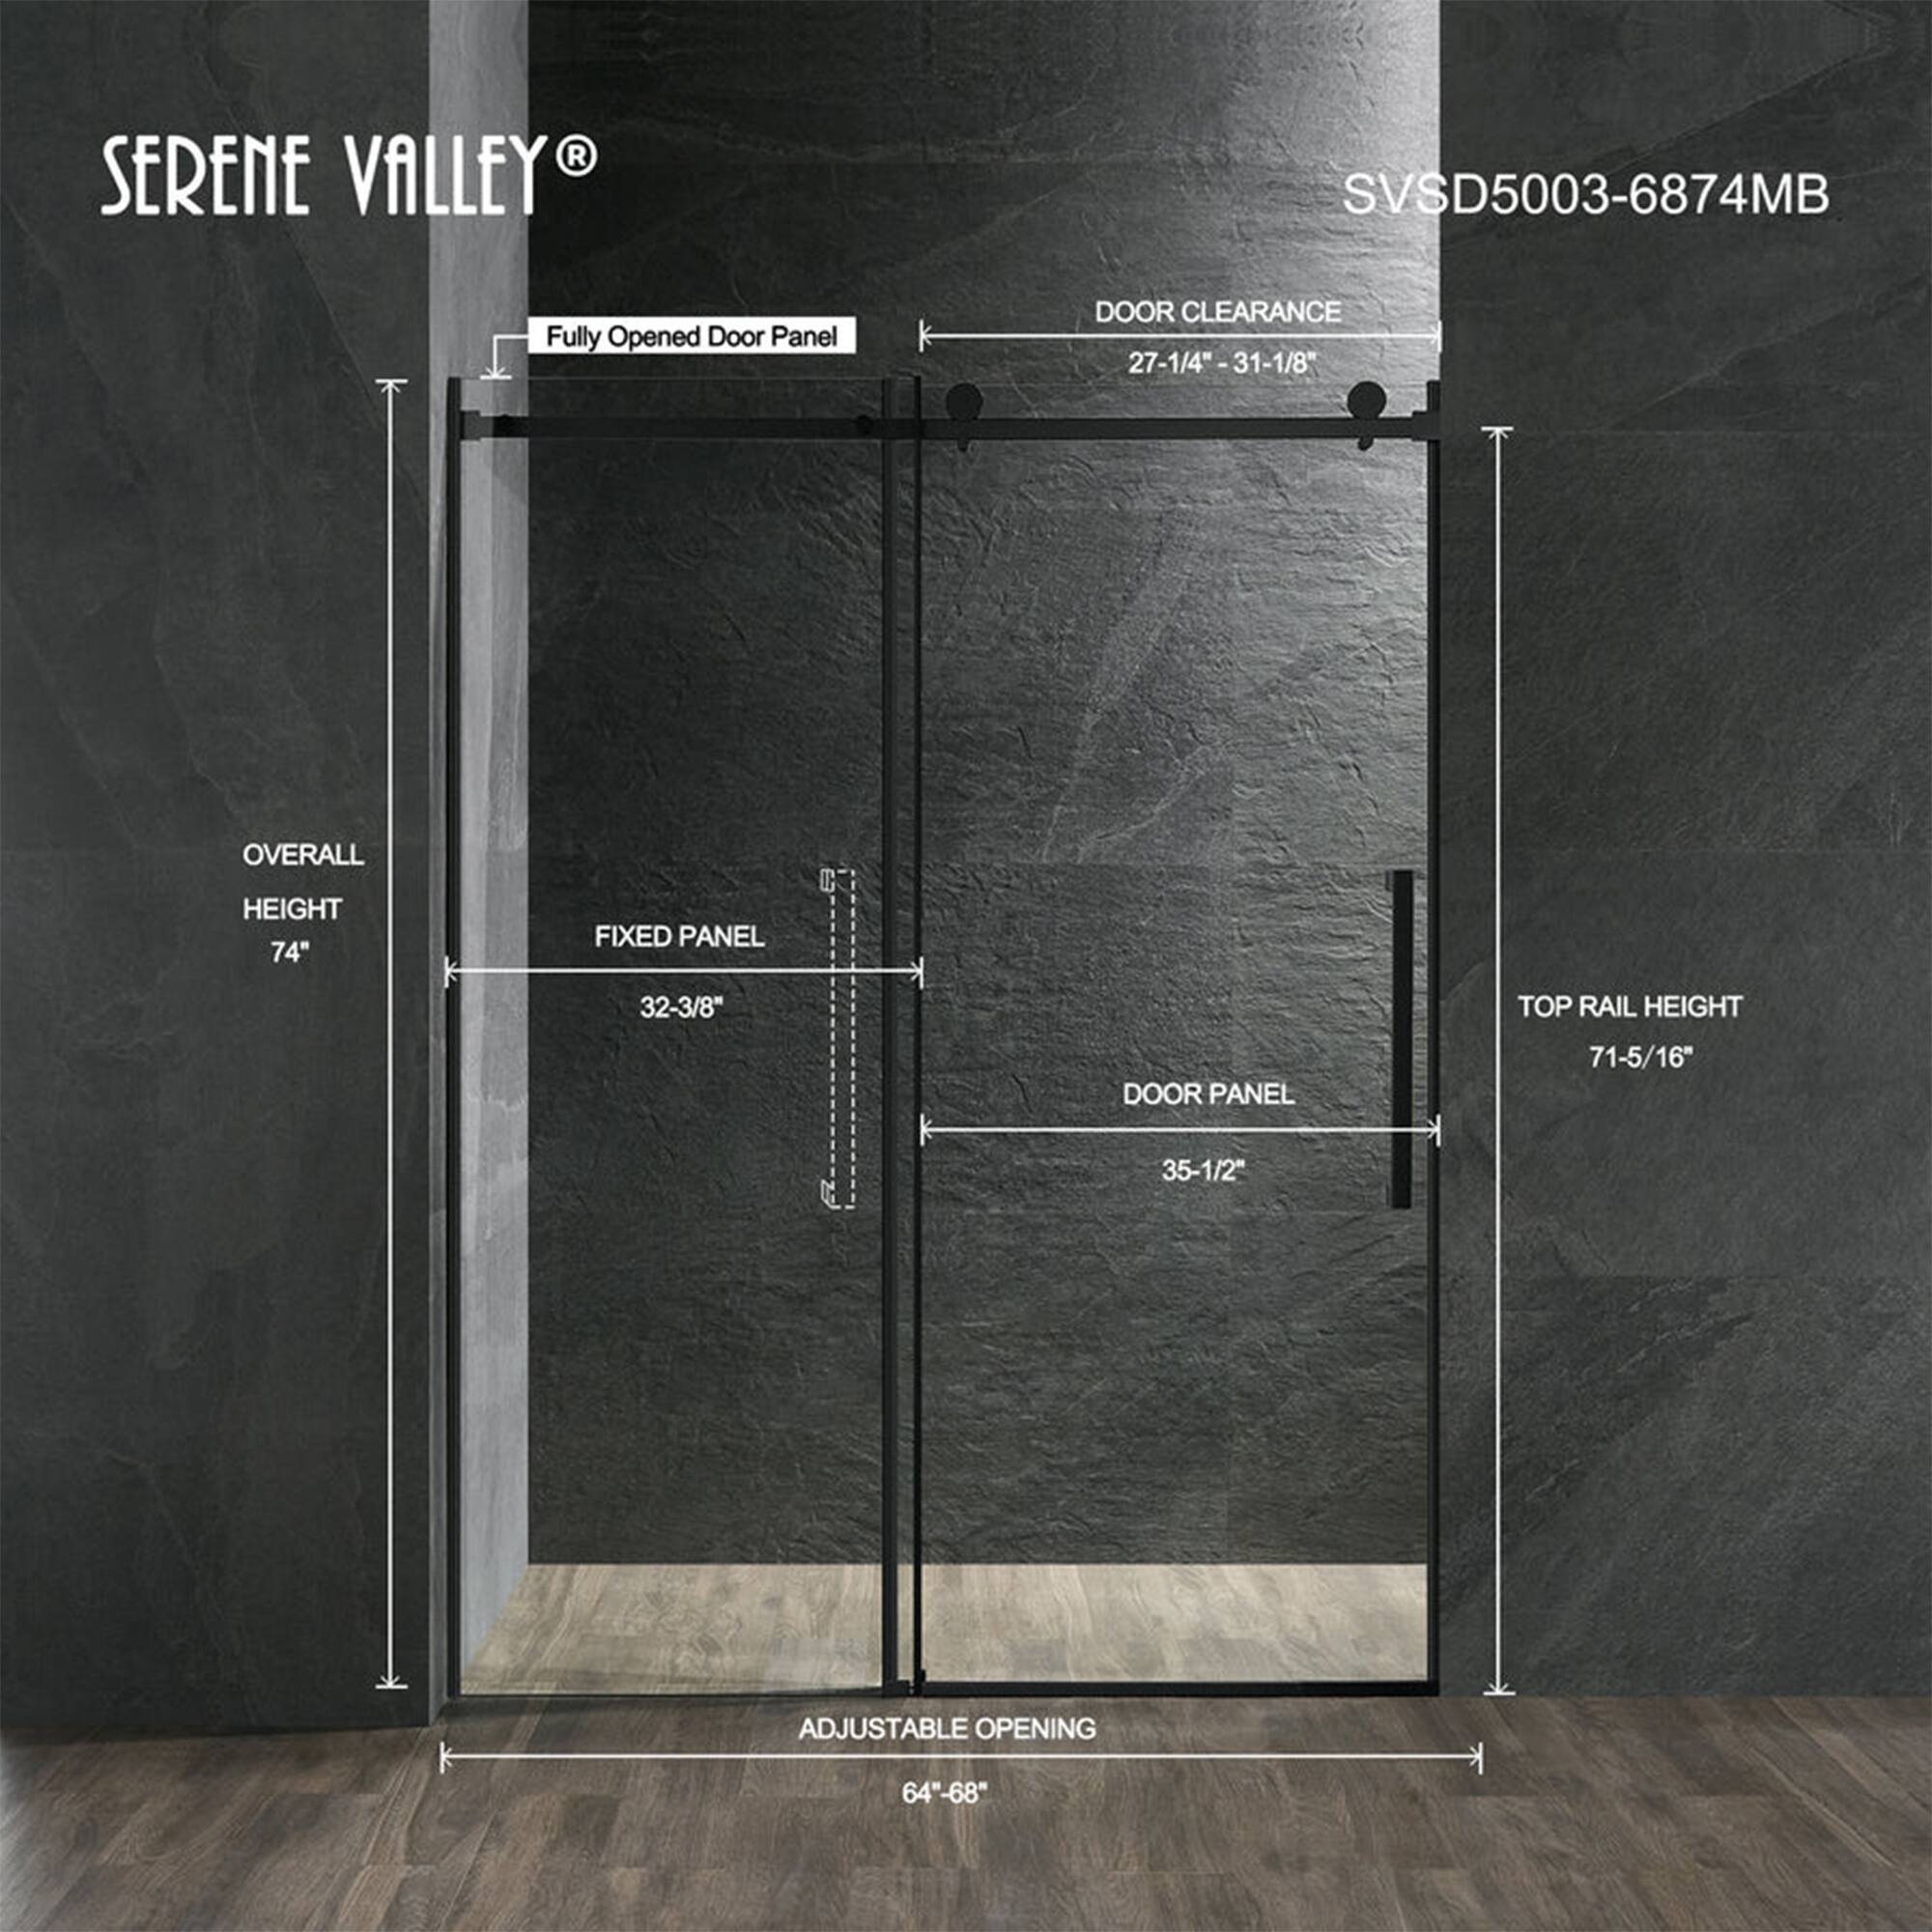 Serene Valley 68 x 74 Inch Square Rail Frameless Sliding Shower Door, Black - 68 x 74 inches